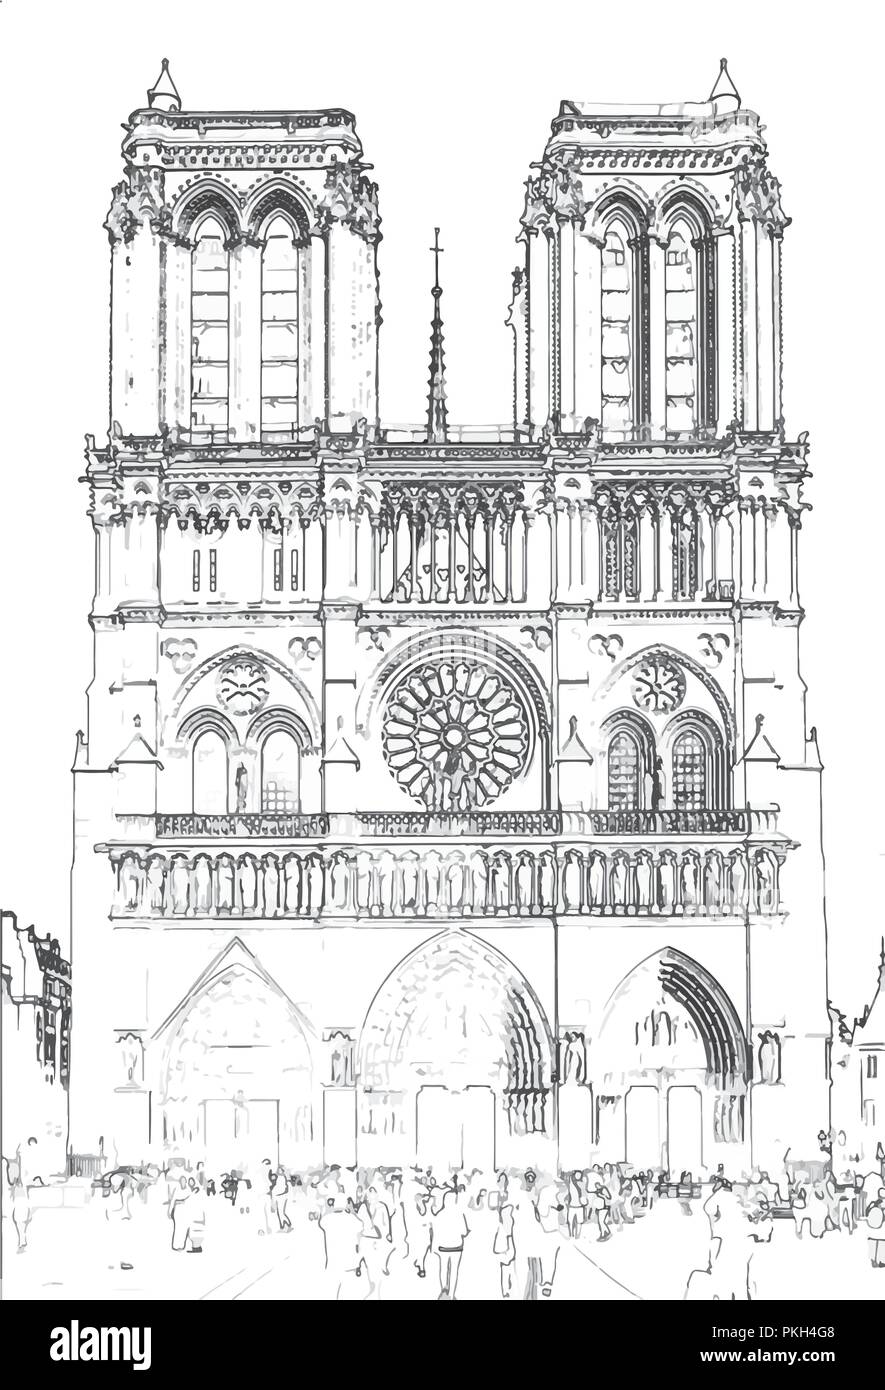 Illustrazione Vettoriale, in stile sketch, di Notre Dame de Paris - Parigi, Francia Illustrazione Vettoriale